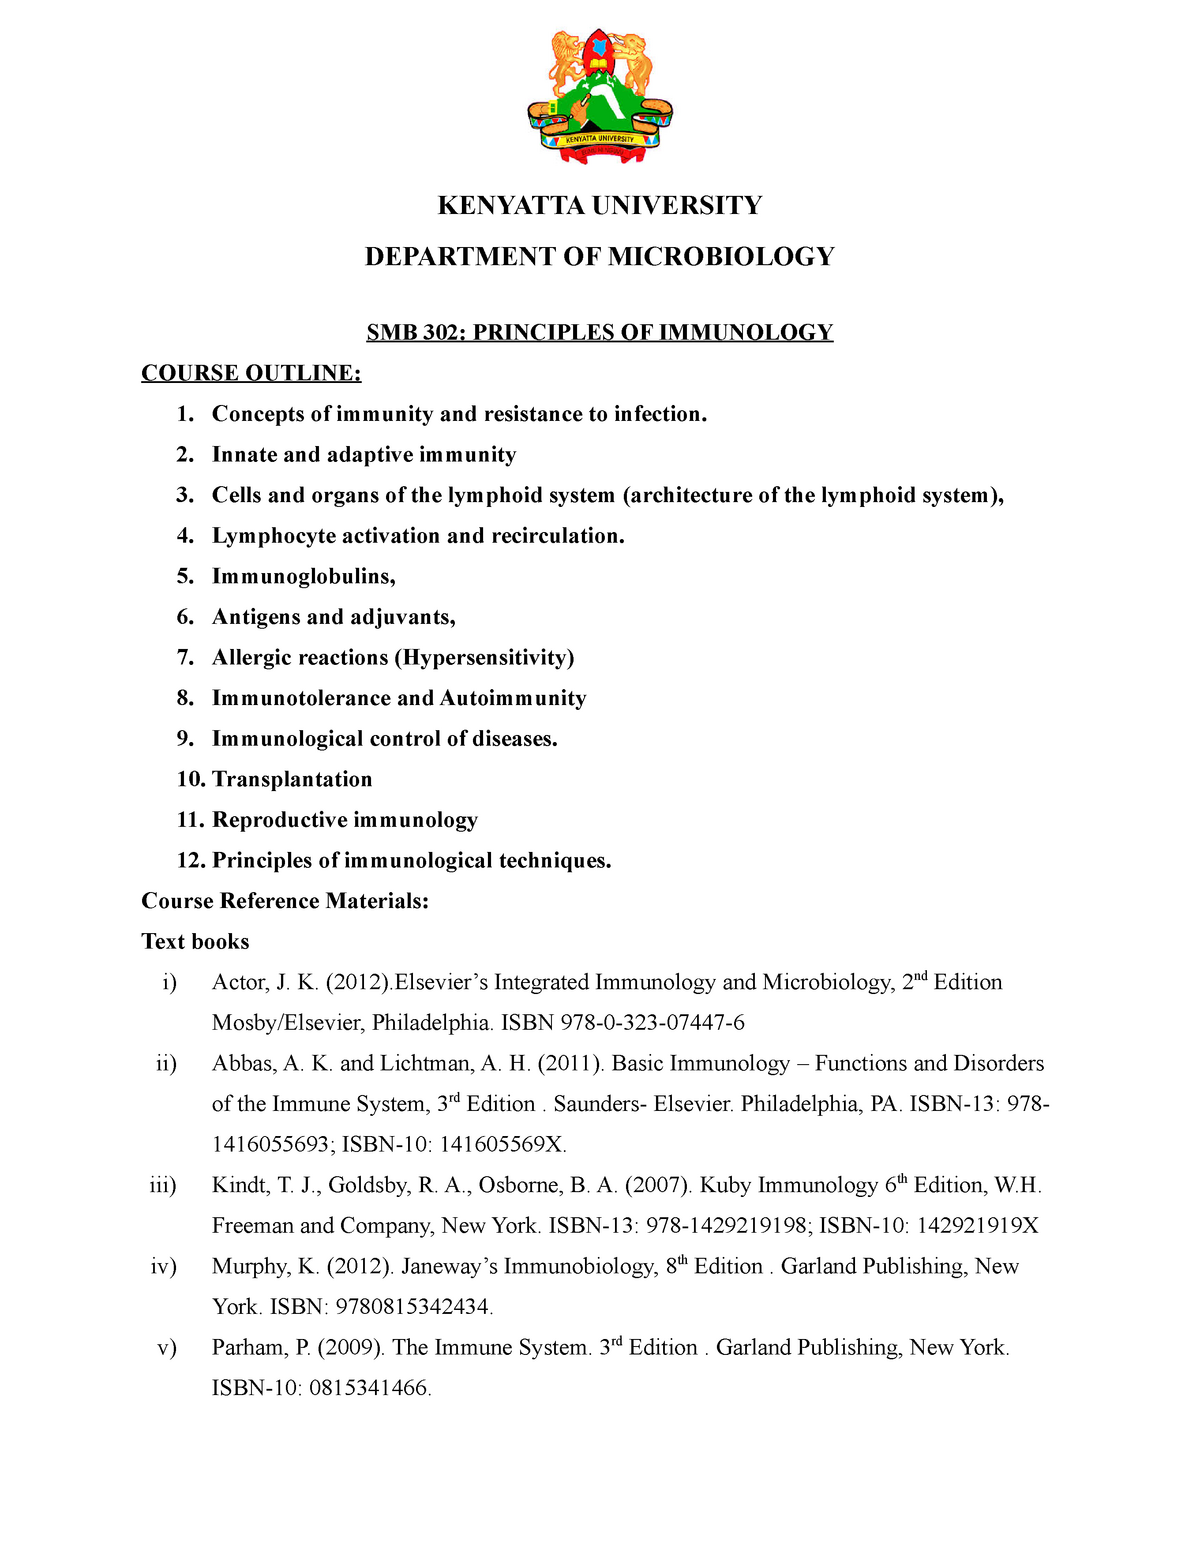 basic immunology abbas 2nd edition pdf